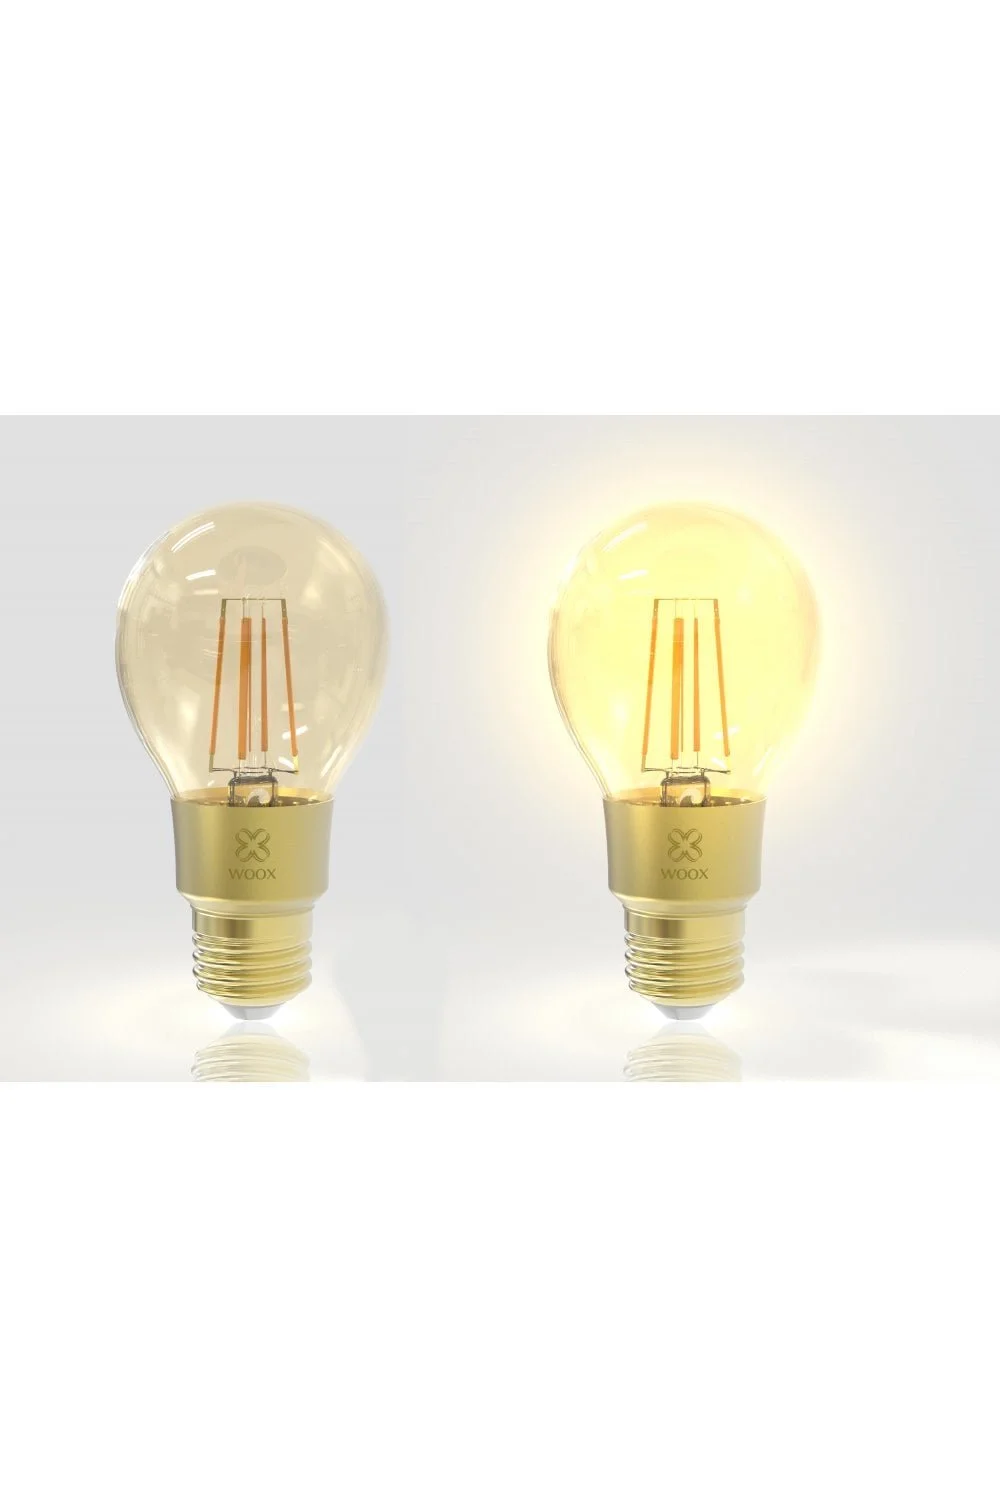 Woox смарт крушка Light - R9078 - WiFi Smart Filament LED Bulb E27, 6W/60W, 650lm - image 1